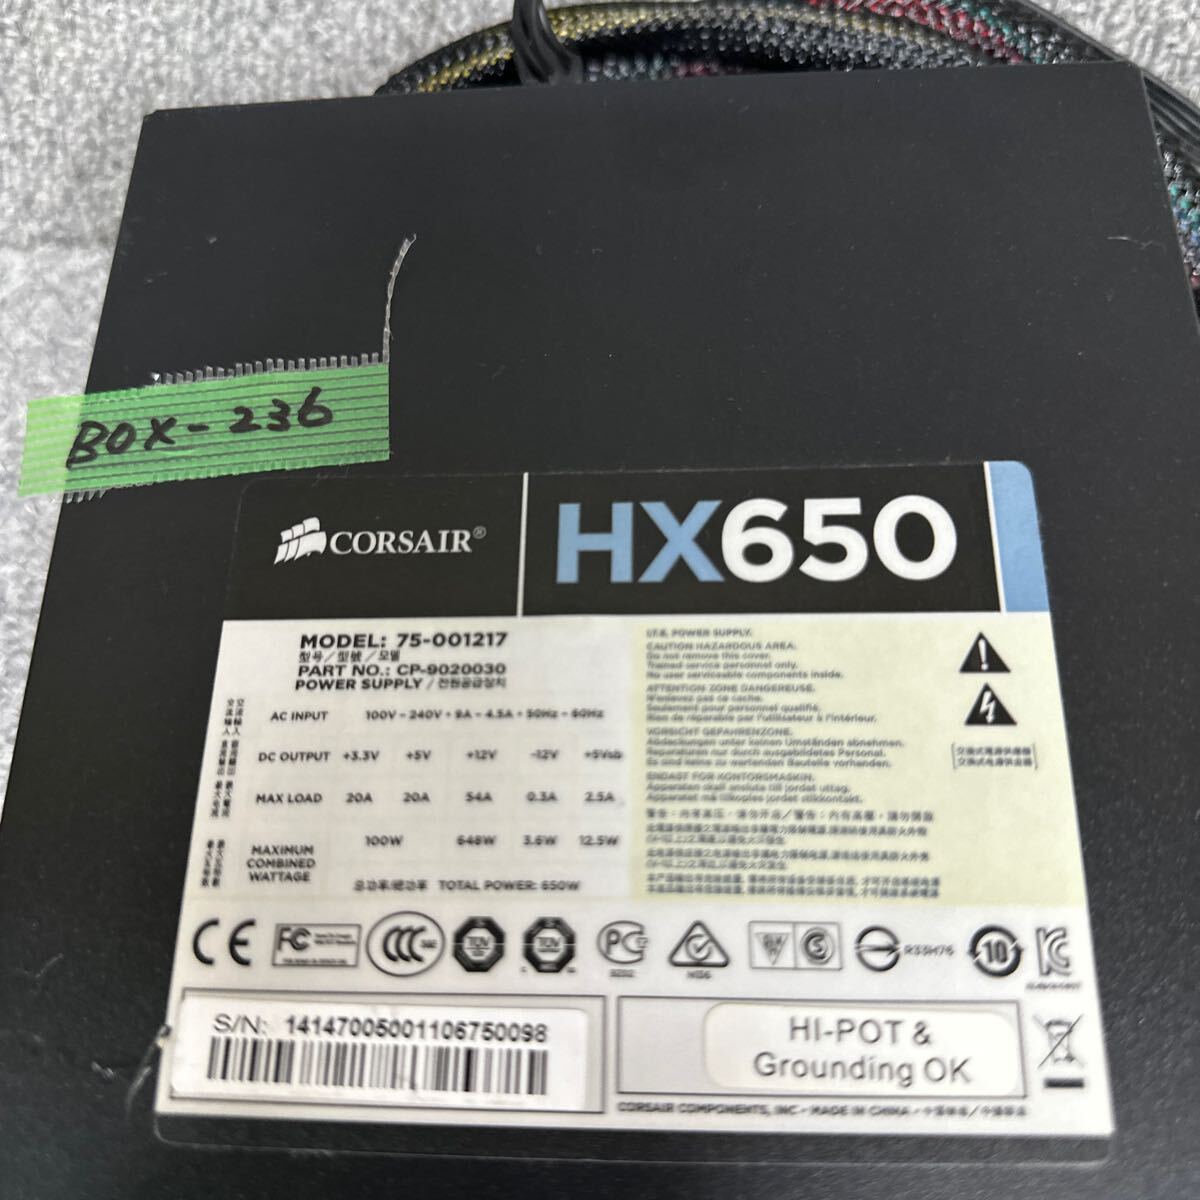 GK 激安 BOX-236 PC 電源BOX CORSAIR HX650 75-001217 CP-9020030 650W 電源ユニット 電圧確認済み 中古品_画像2